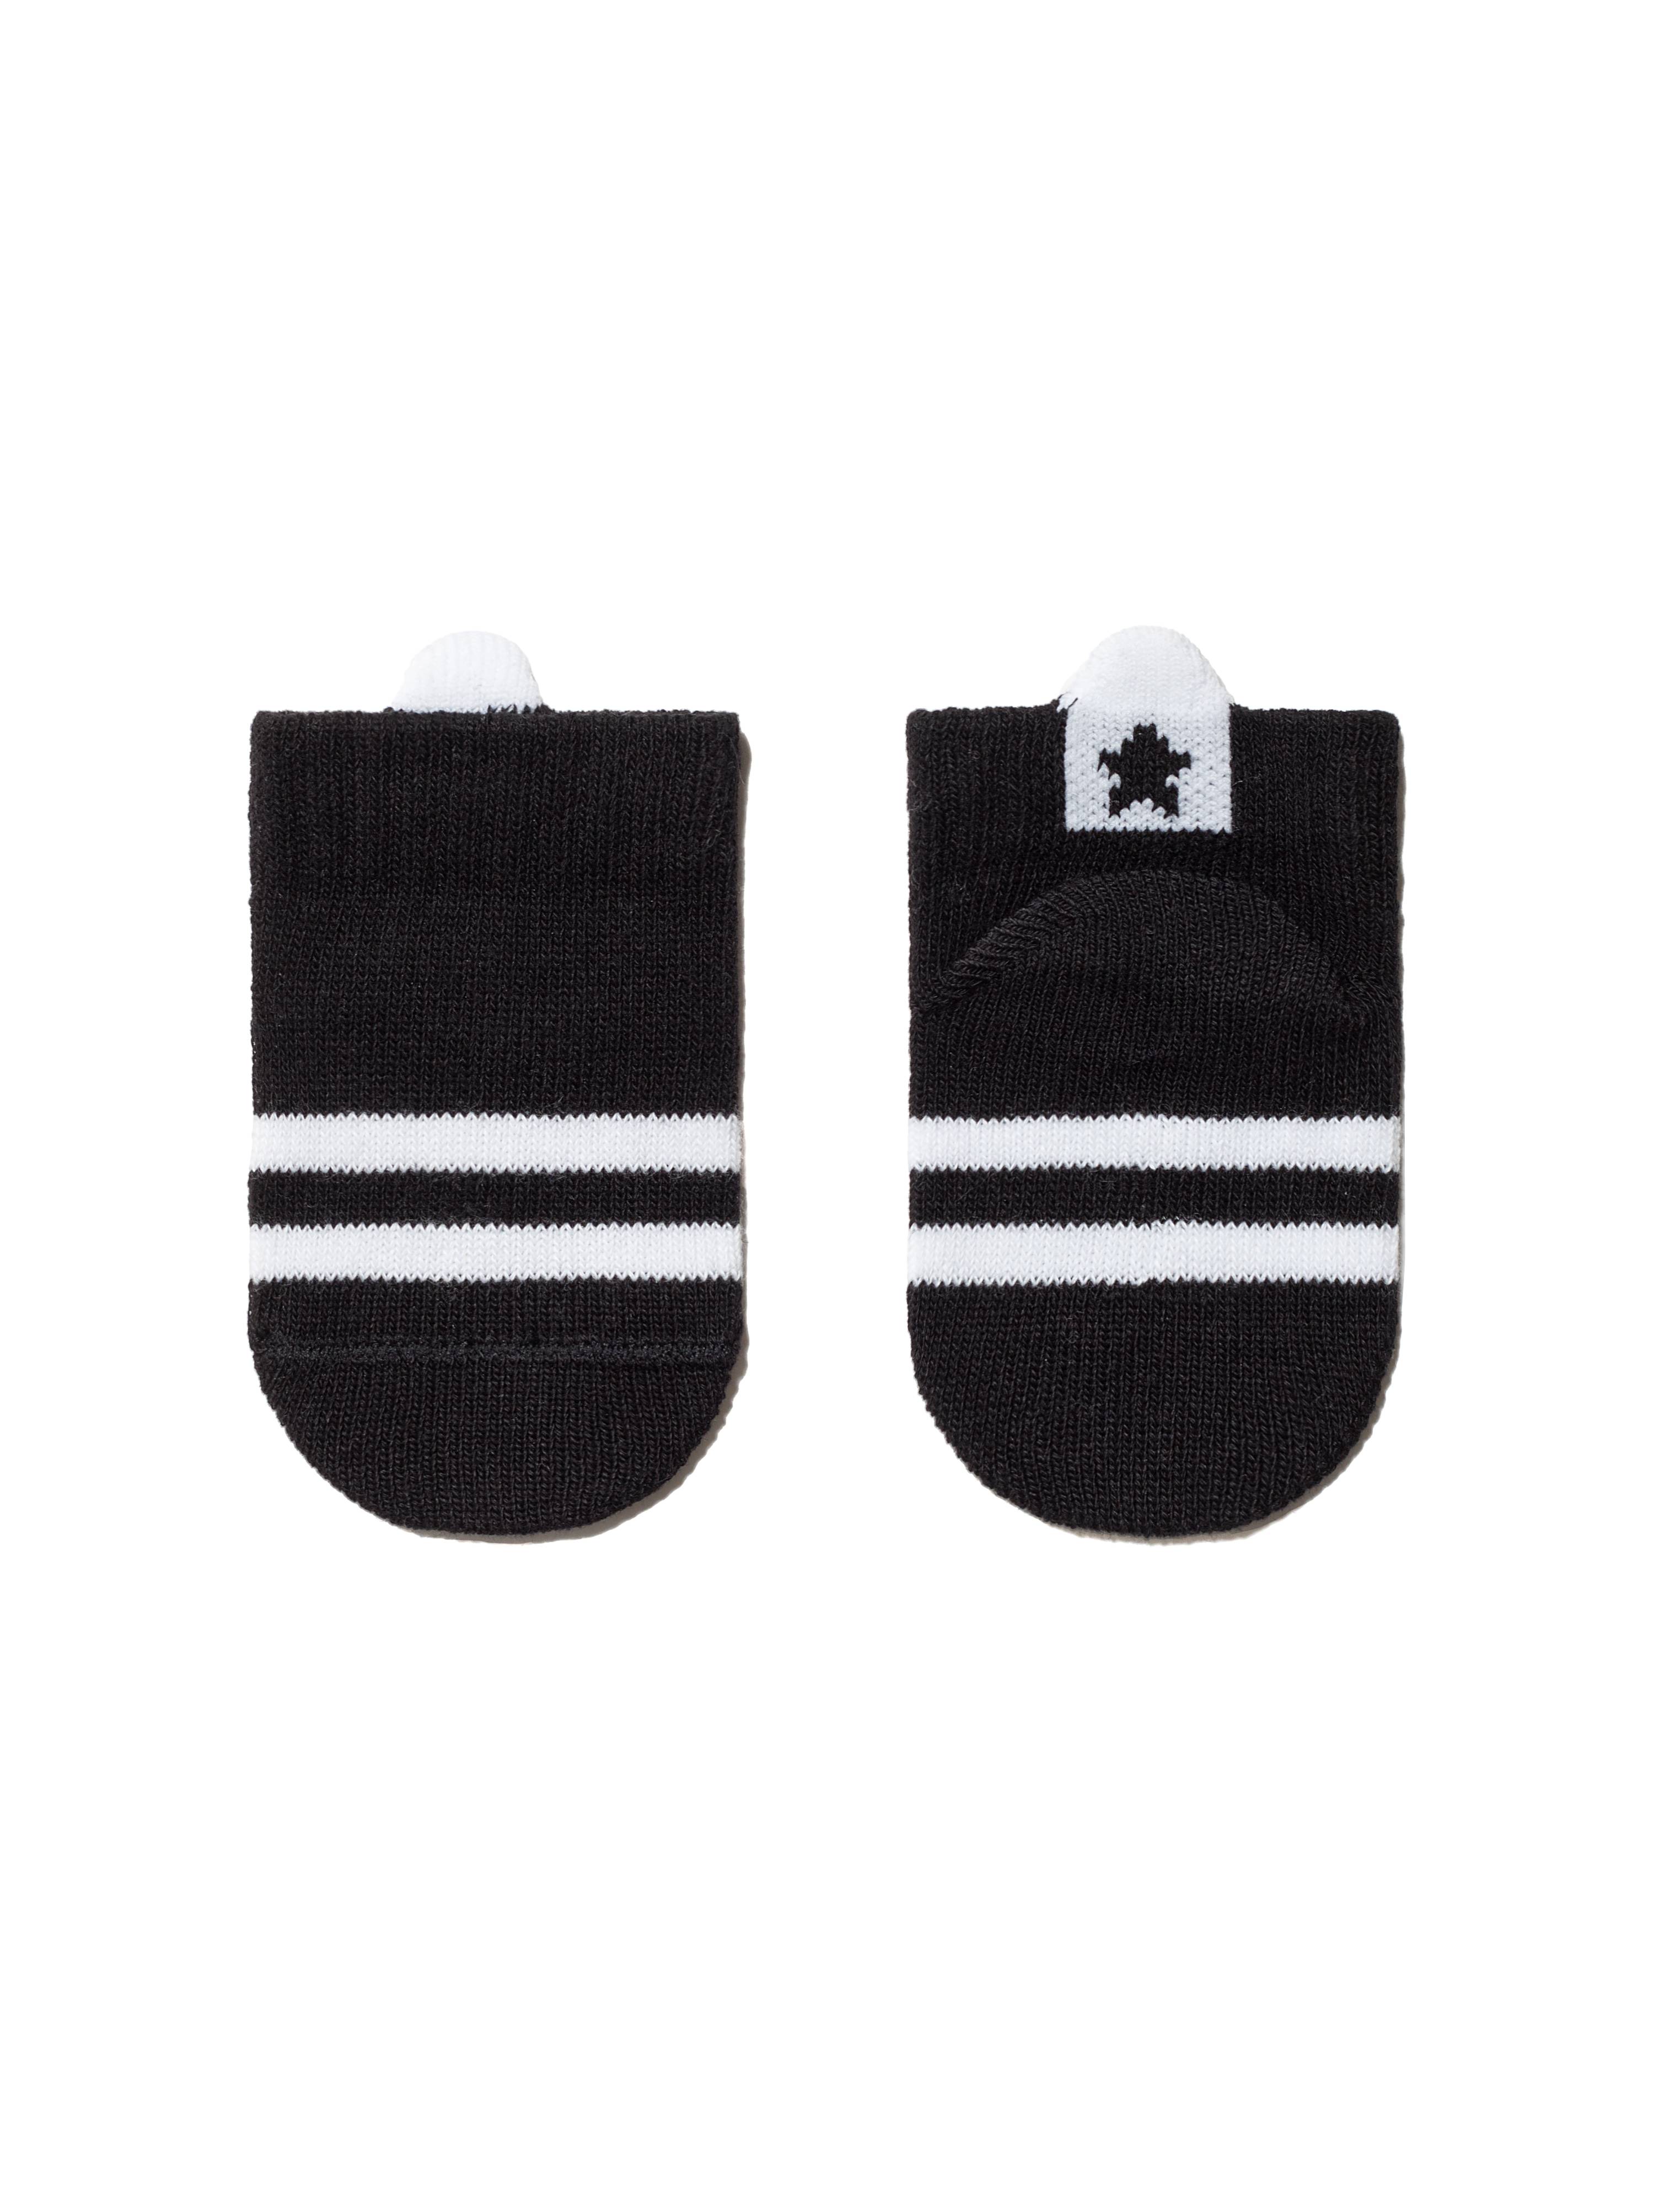 Хлопковые носки TIP-TOP с пикотом-«язычком» для самых маленьких, модель 502 Conte ⭐️, цвет черный, размер 10